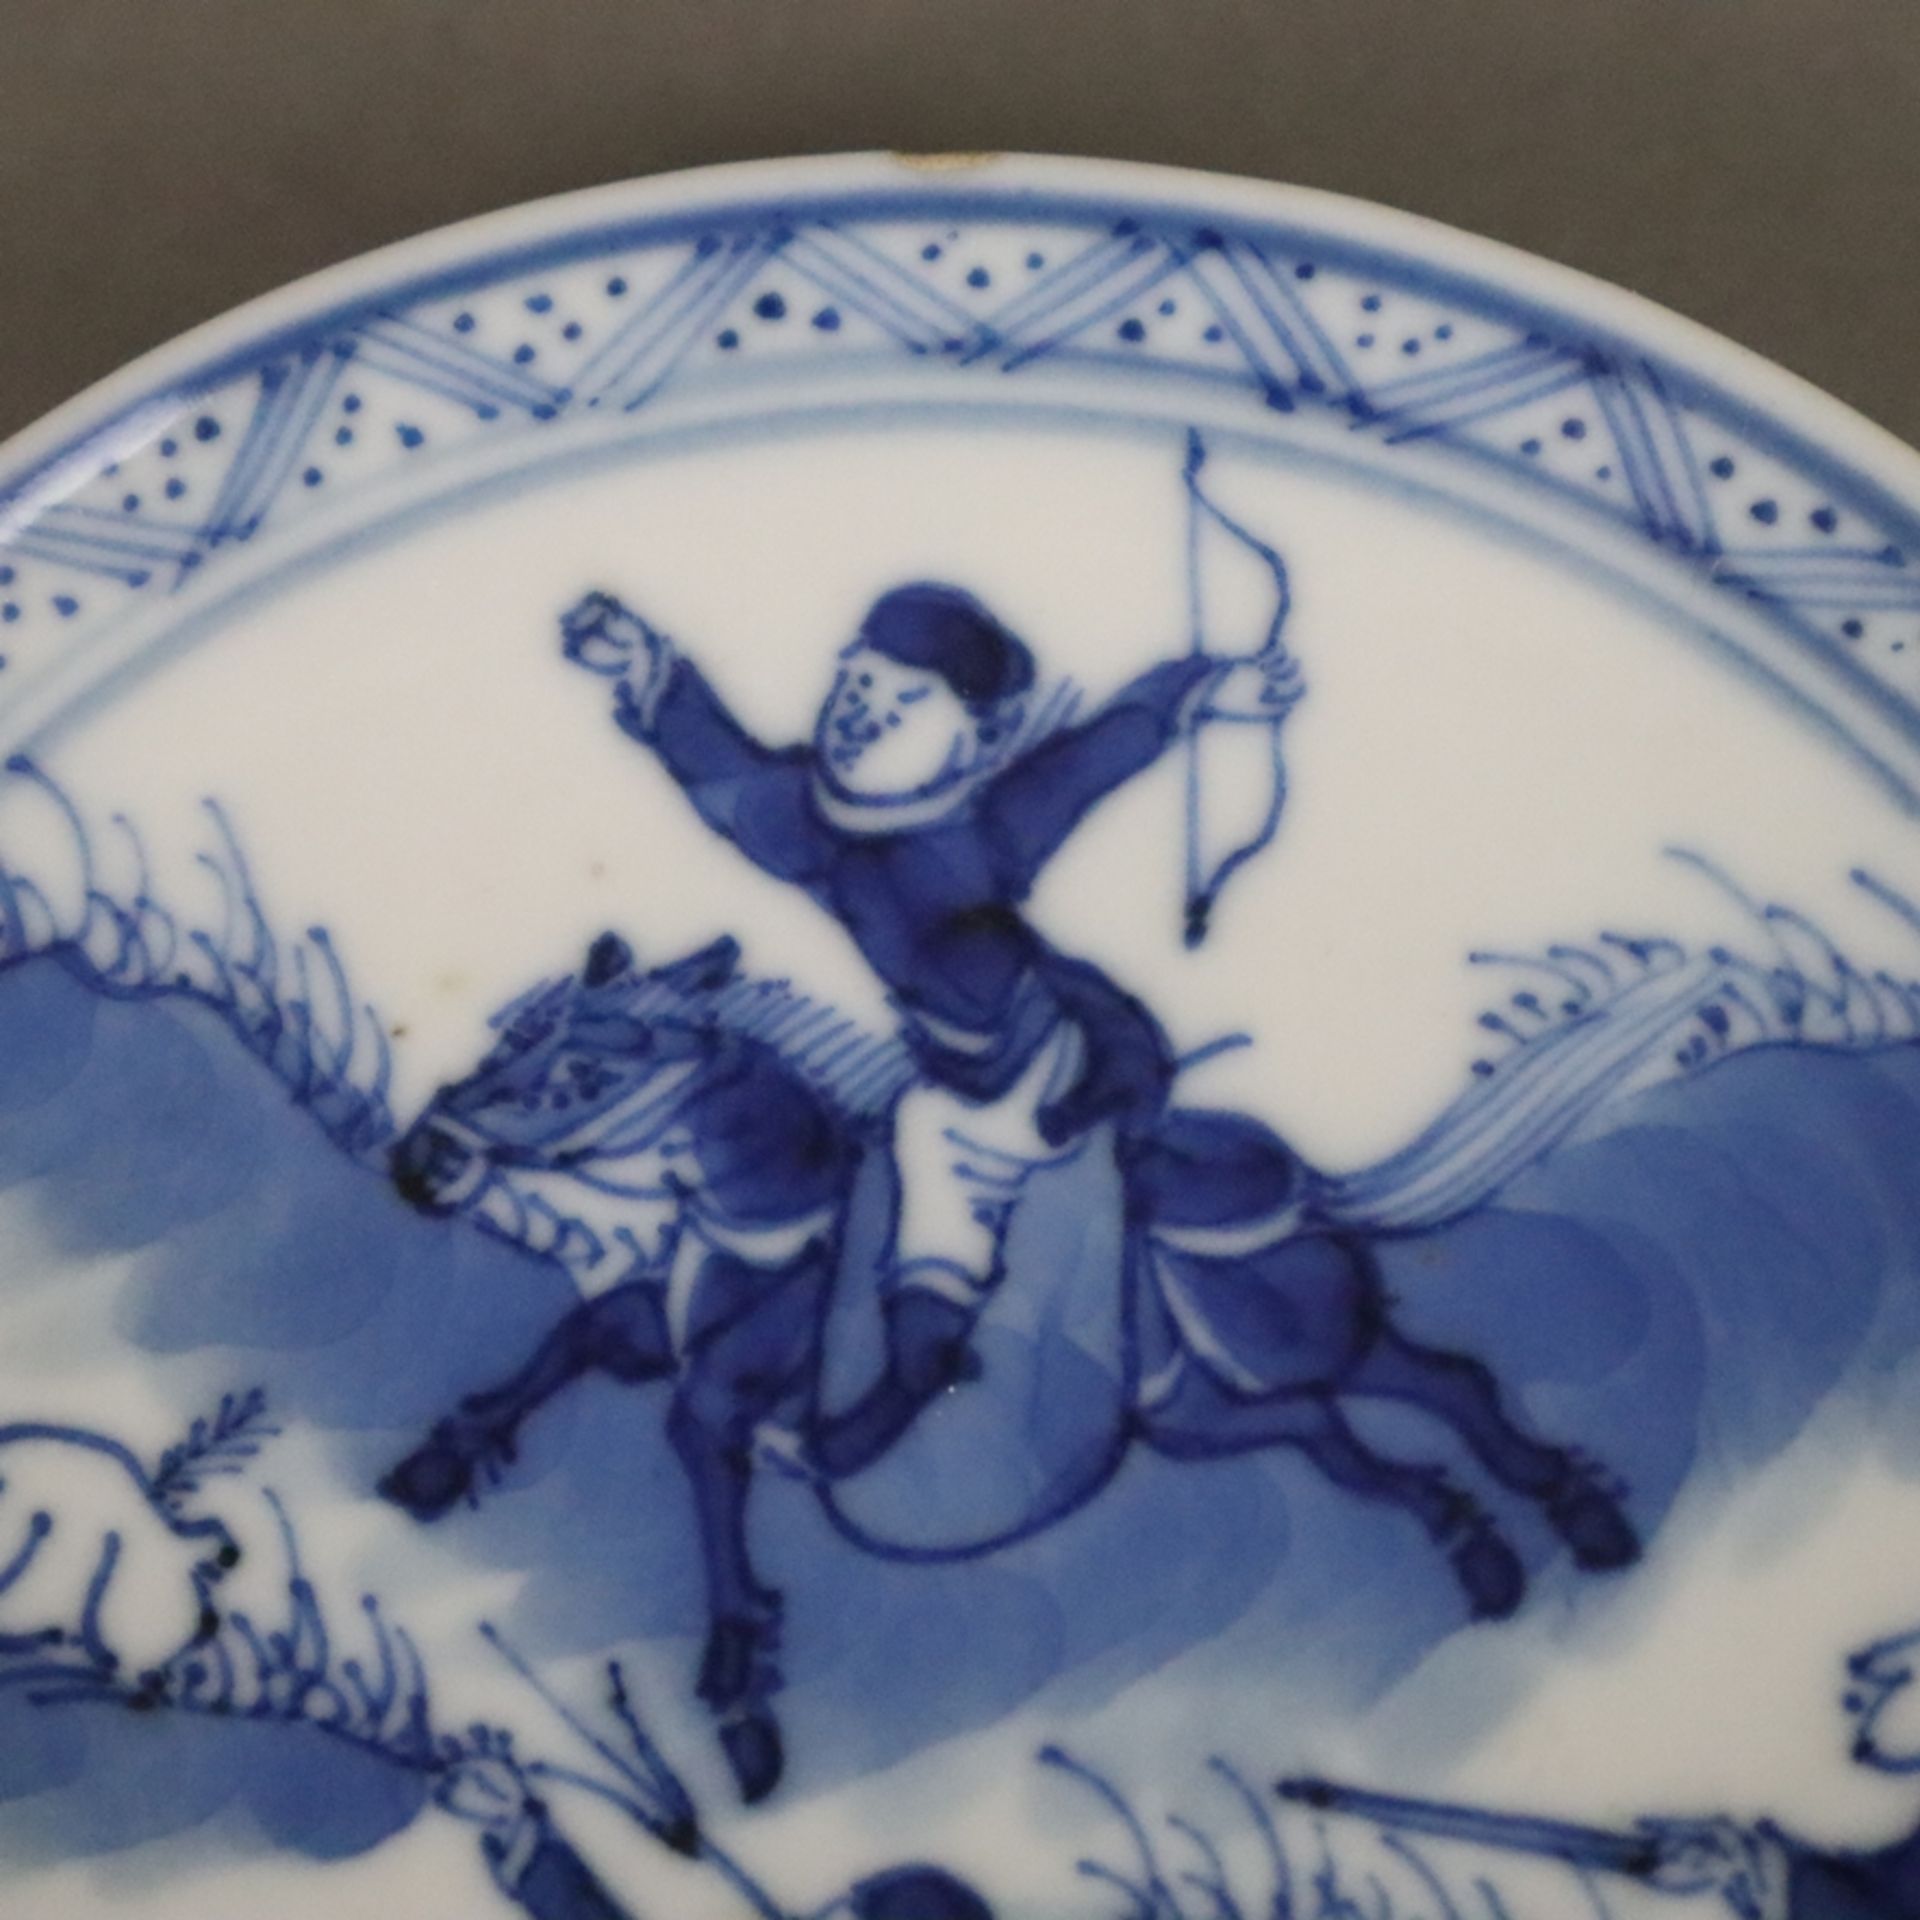 Drei Blauweiß-Tellerchen - China, Porzellan, als Dekor Landschaften mit berittenen Jägern auf Hasen - Bild 4 aus 9